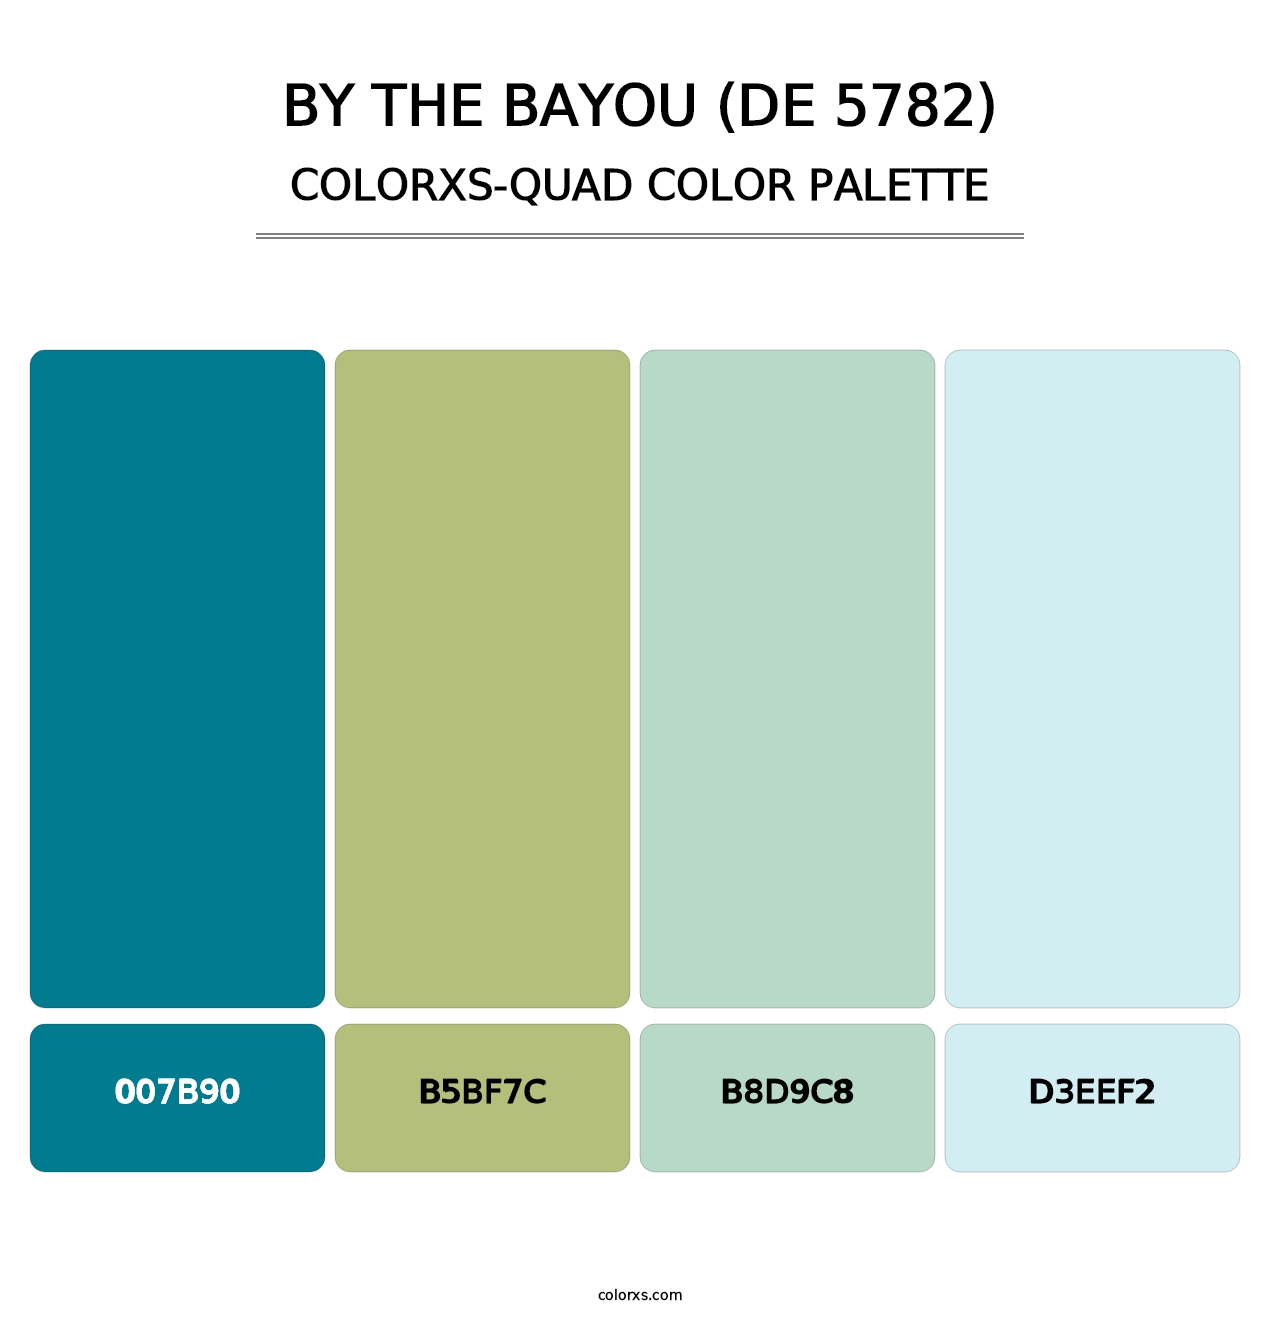 By the Bayou (DE 5782) - Colorxs Quad Palette